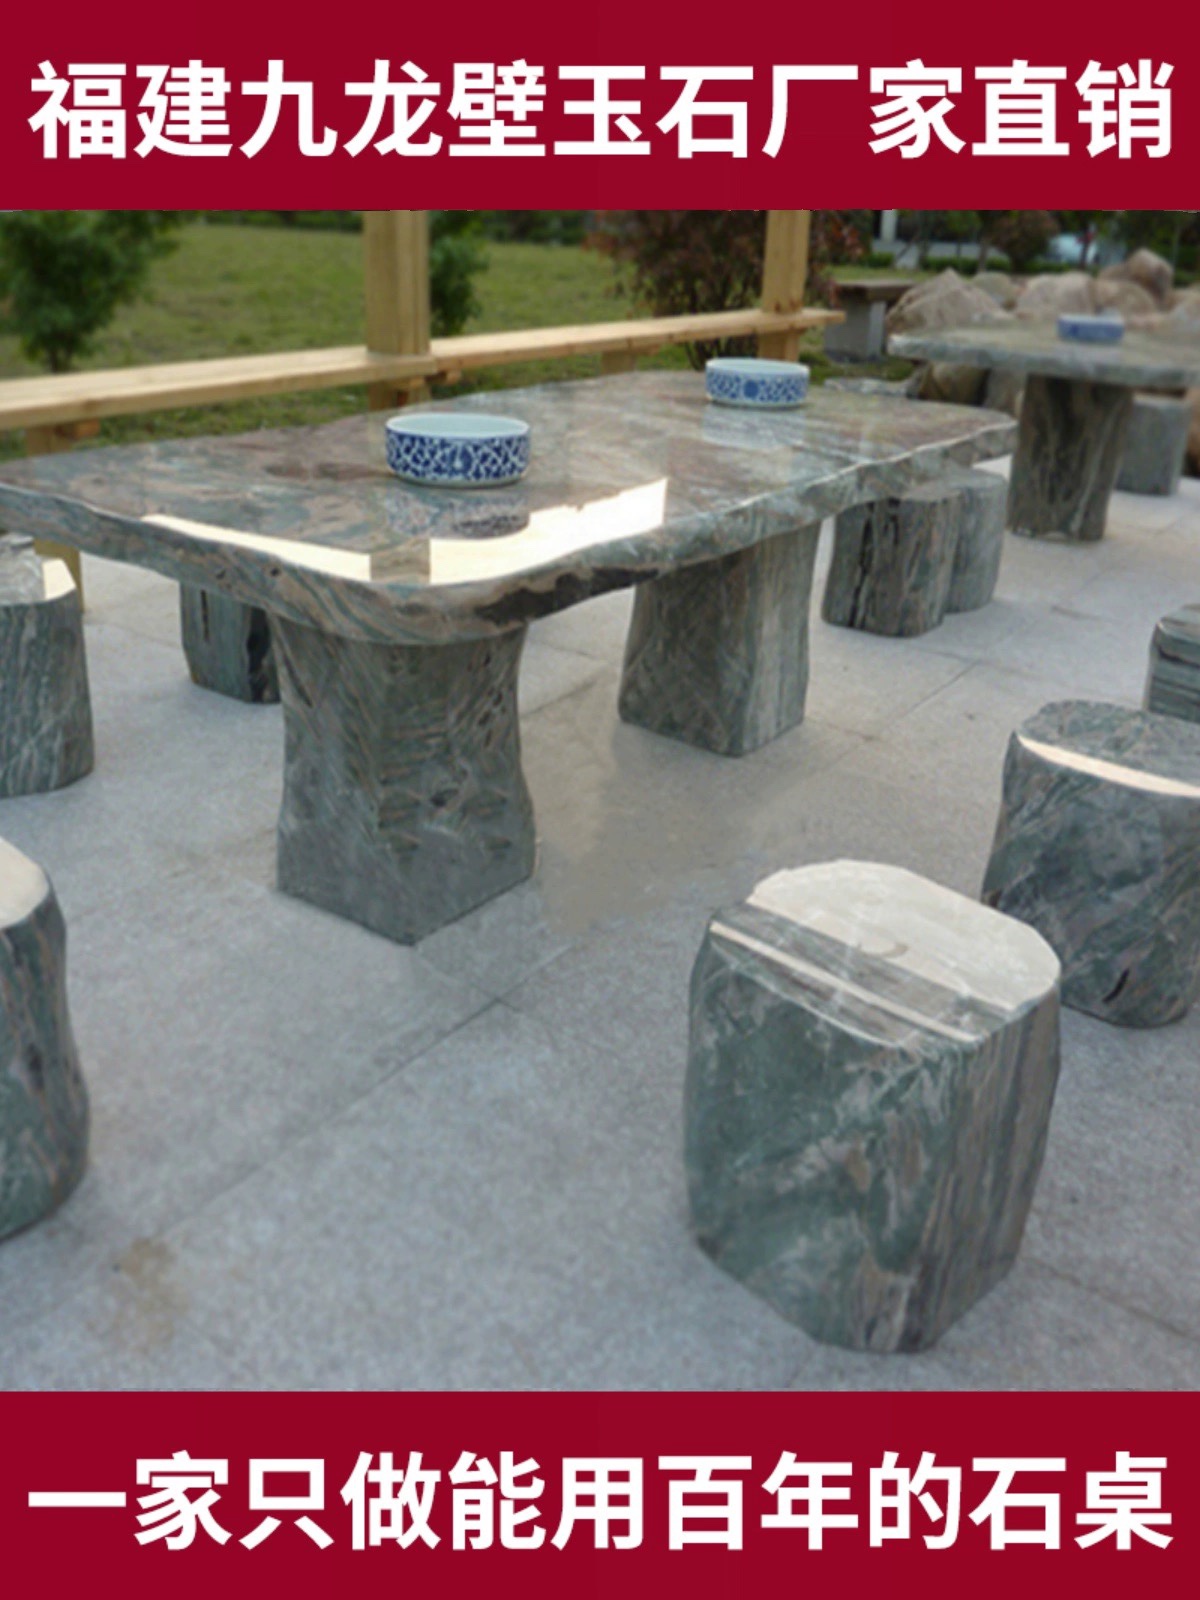 九龙壁石桌石凳庭院花园天然茶台别墅圆桌户外新中式花园石雕摆件